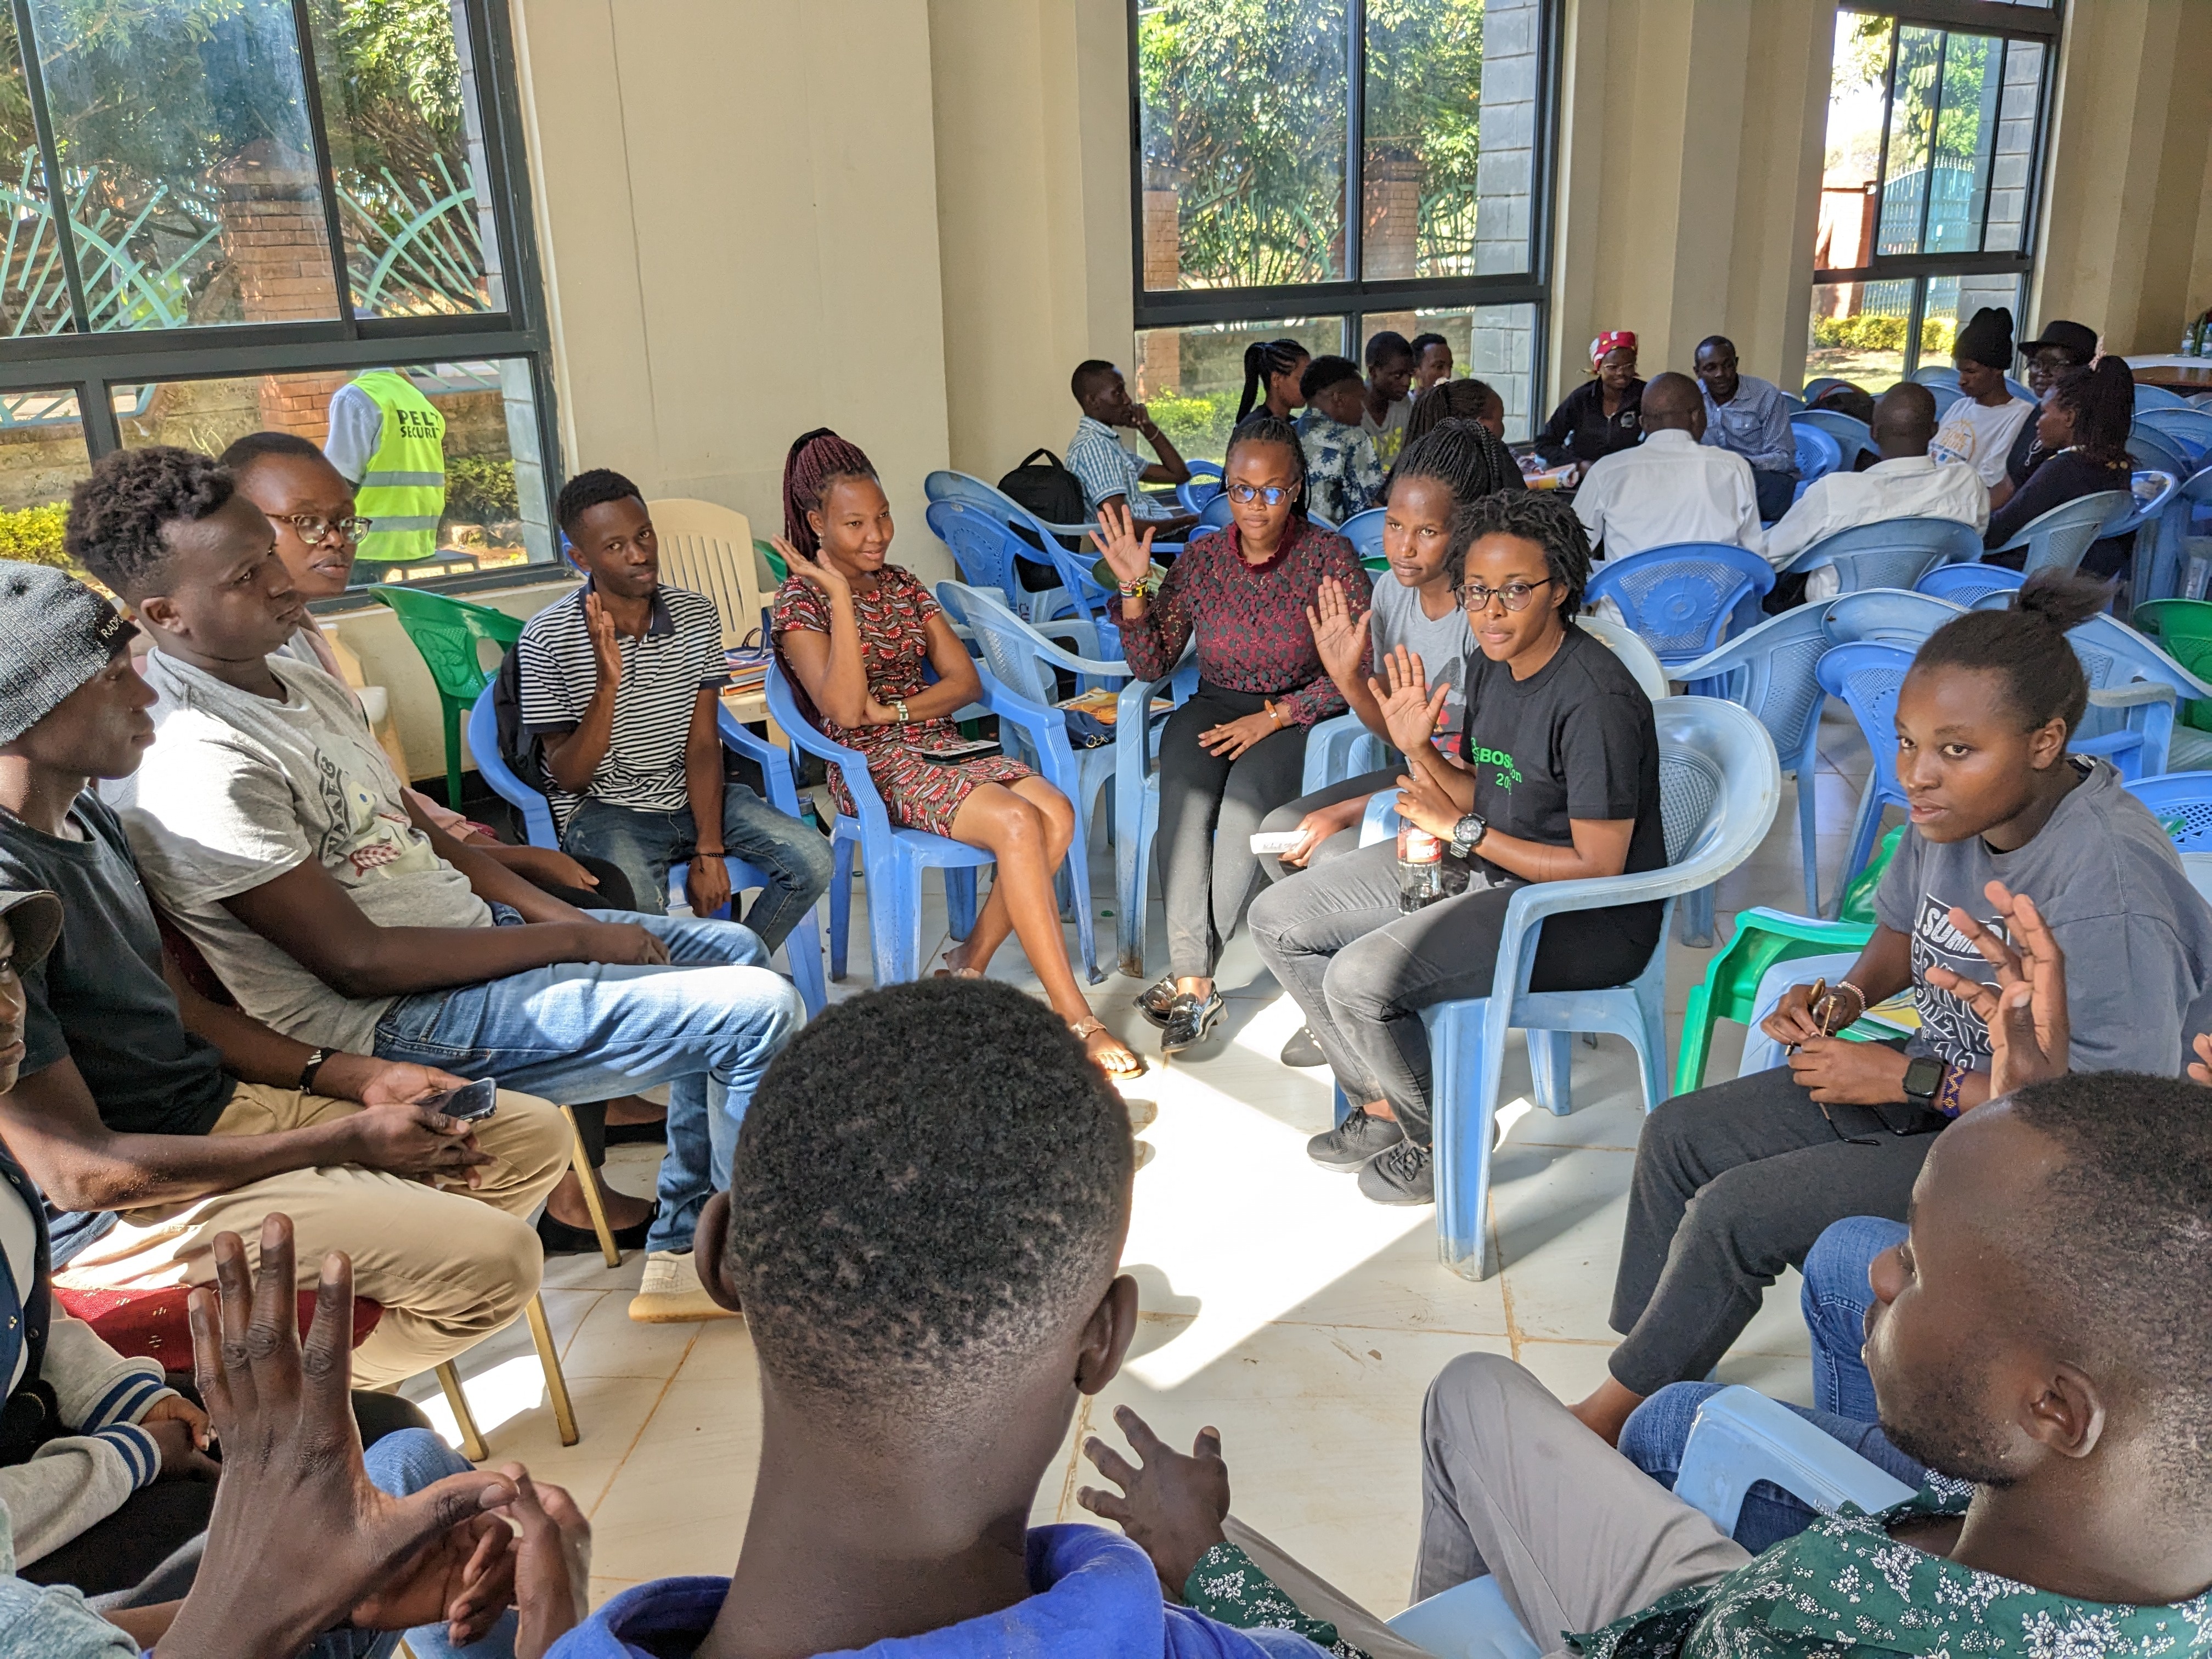 Integrantes del Bioinformatics Hub of Kenya, jóvenes estudiantes, aproximadamente 6 mujeres y cinco hombres, sentados en sillas azules formando un círculo, dentro de un moderno edificio de hormigón con techos altos, muchos de ellos levantando la mano como en una votación, entablando una conversación, la luz del sol crea una forma cuadrada en el centro del círculo